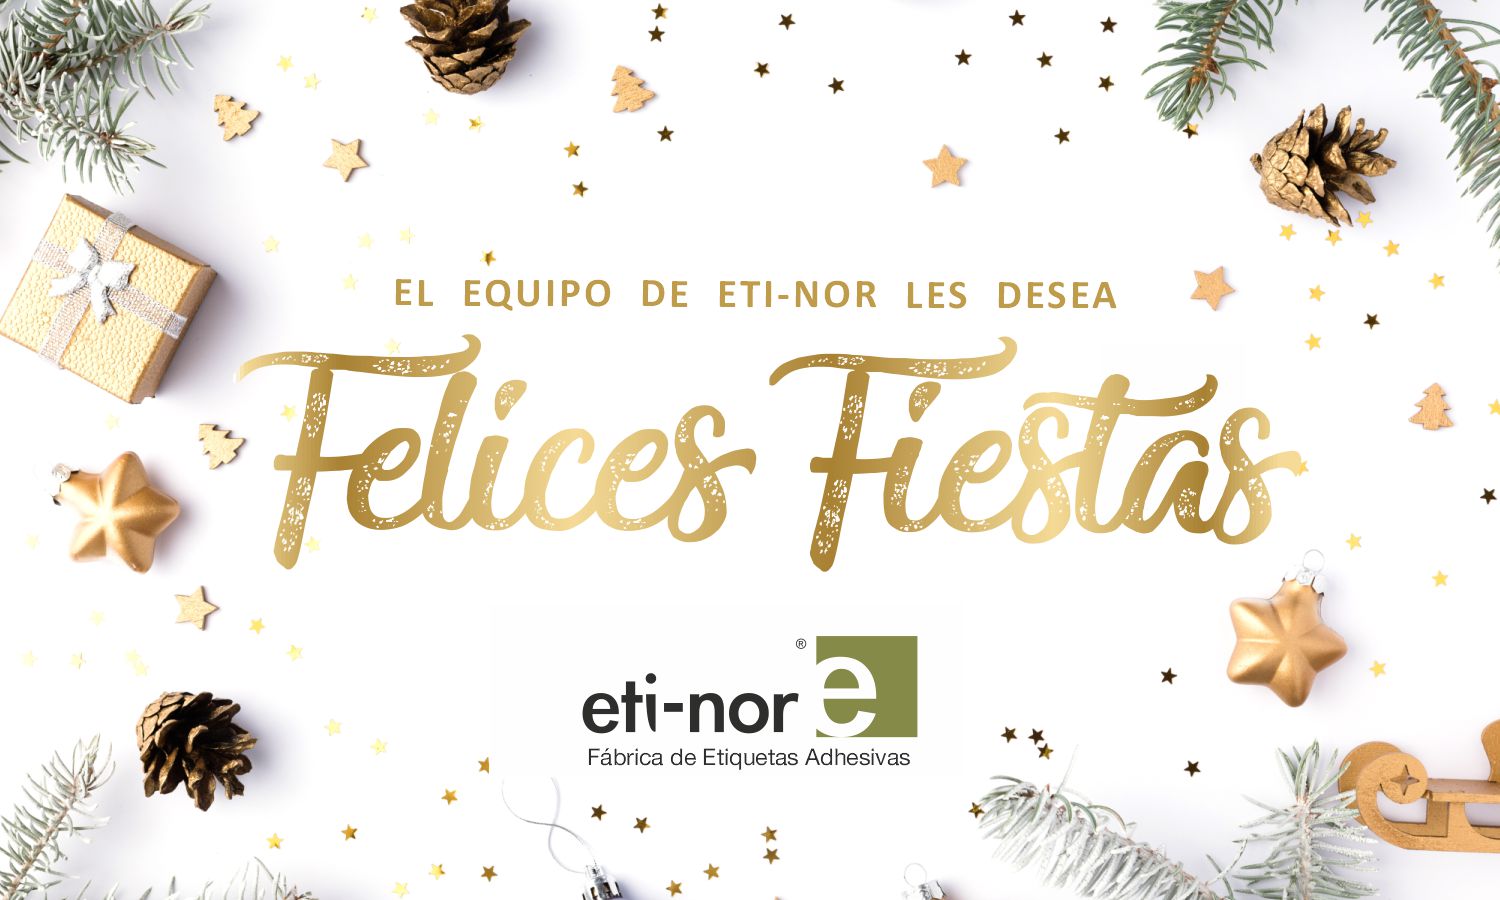 Felices Fiestas de todo el equipo Etinor